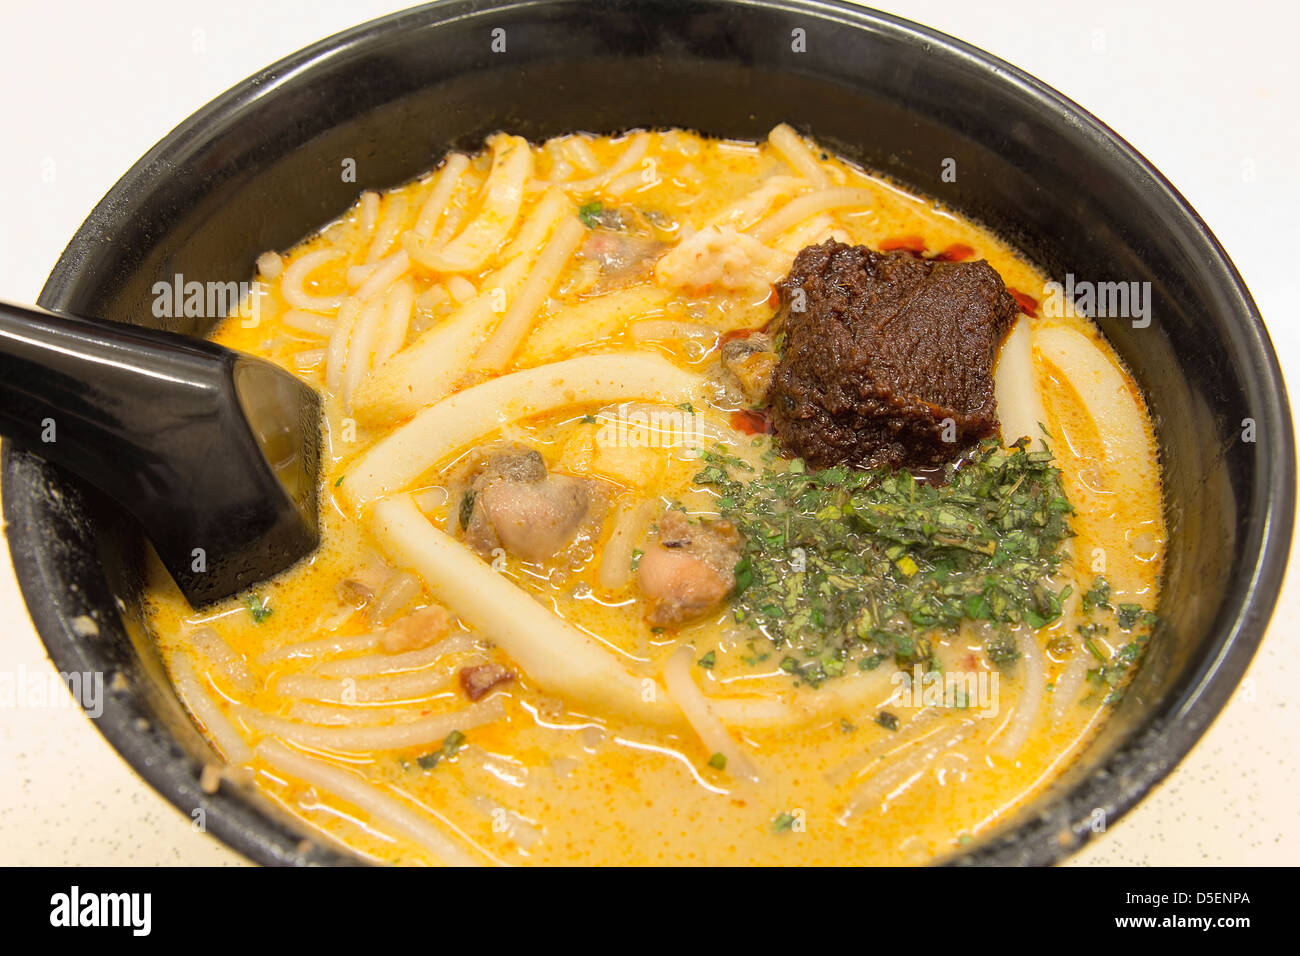 Singapur Curry Laksa Nudeln mit Sambal Chili Paste Garnelen Fishcake und Herzmuscheln Südostasien lokales Gericht Closeup Stockfoto